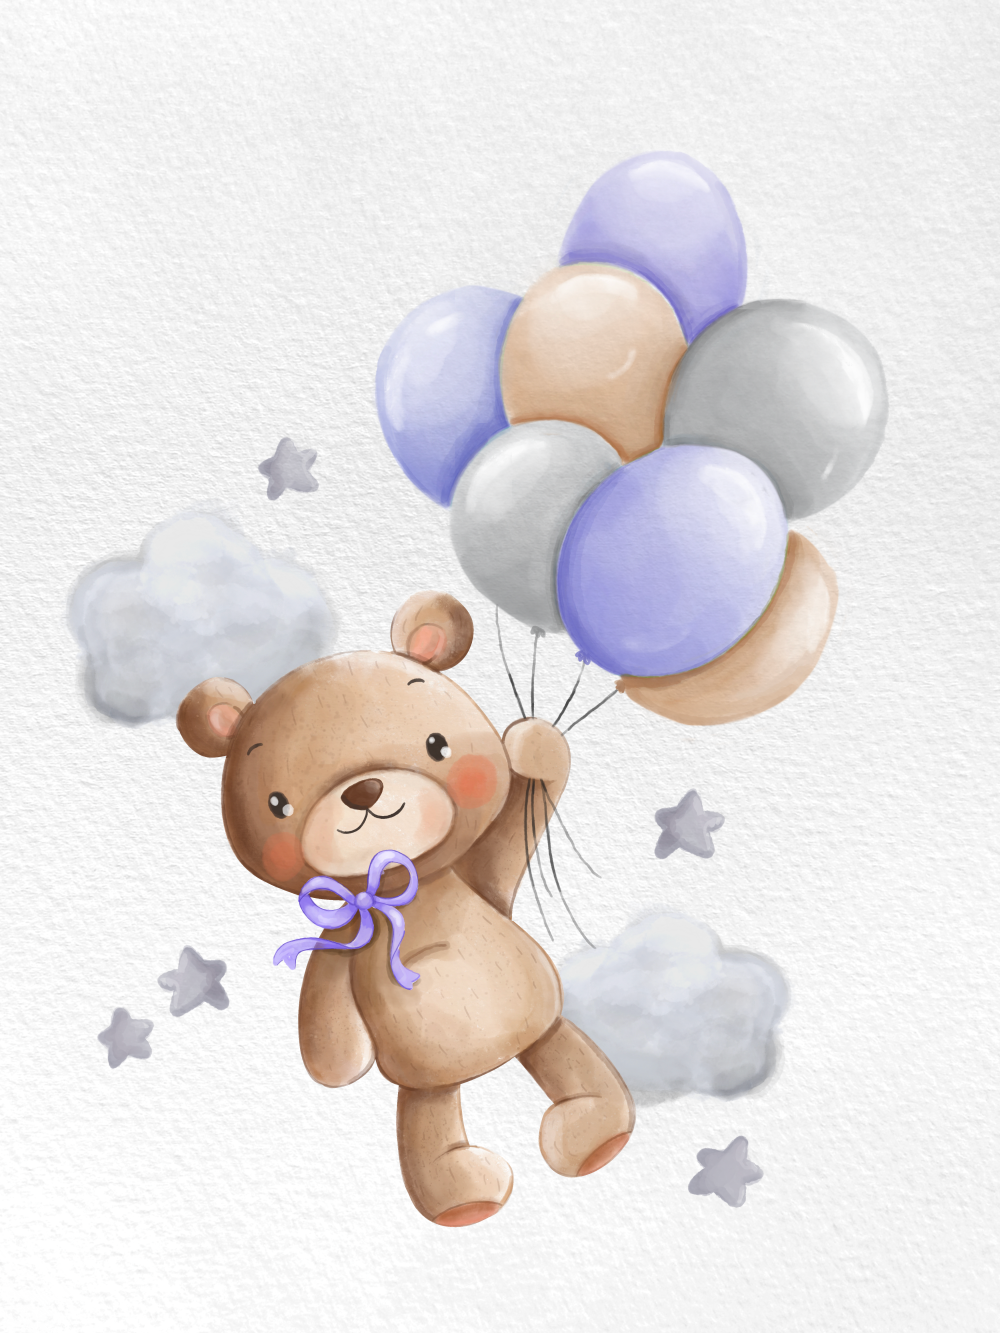 Obraz nebo plakát medvídek s fialovými balónky a mašlí na míru jako dárek do dětského pokoje nebo pro narození dítěte | ZivotniOkamziky.cz